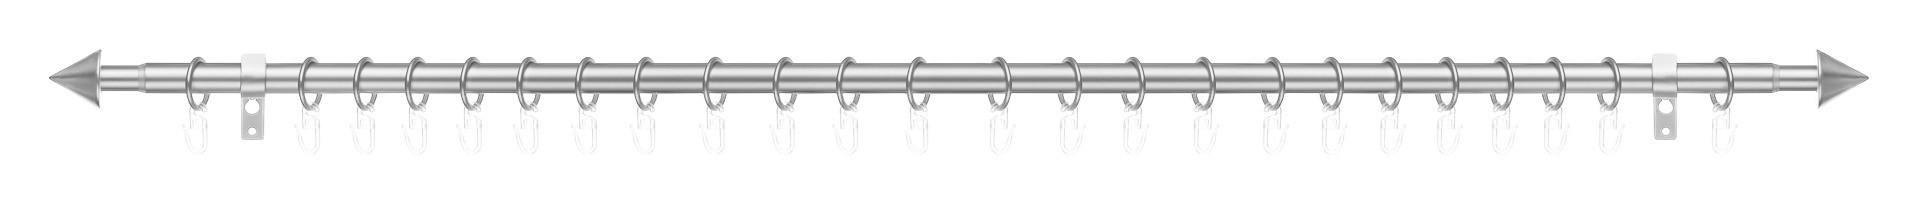 Gardinenstange Kegel Chrom Metall D: ca. 2 cm ausziehbar von ca. 130 bis 240 cm 1.0 Läufe